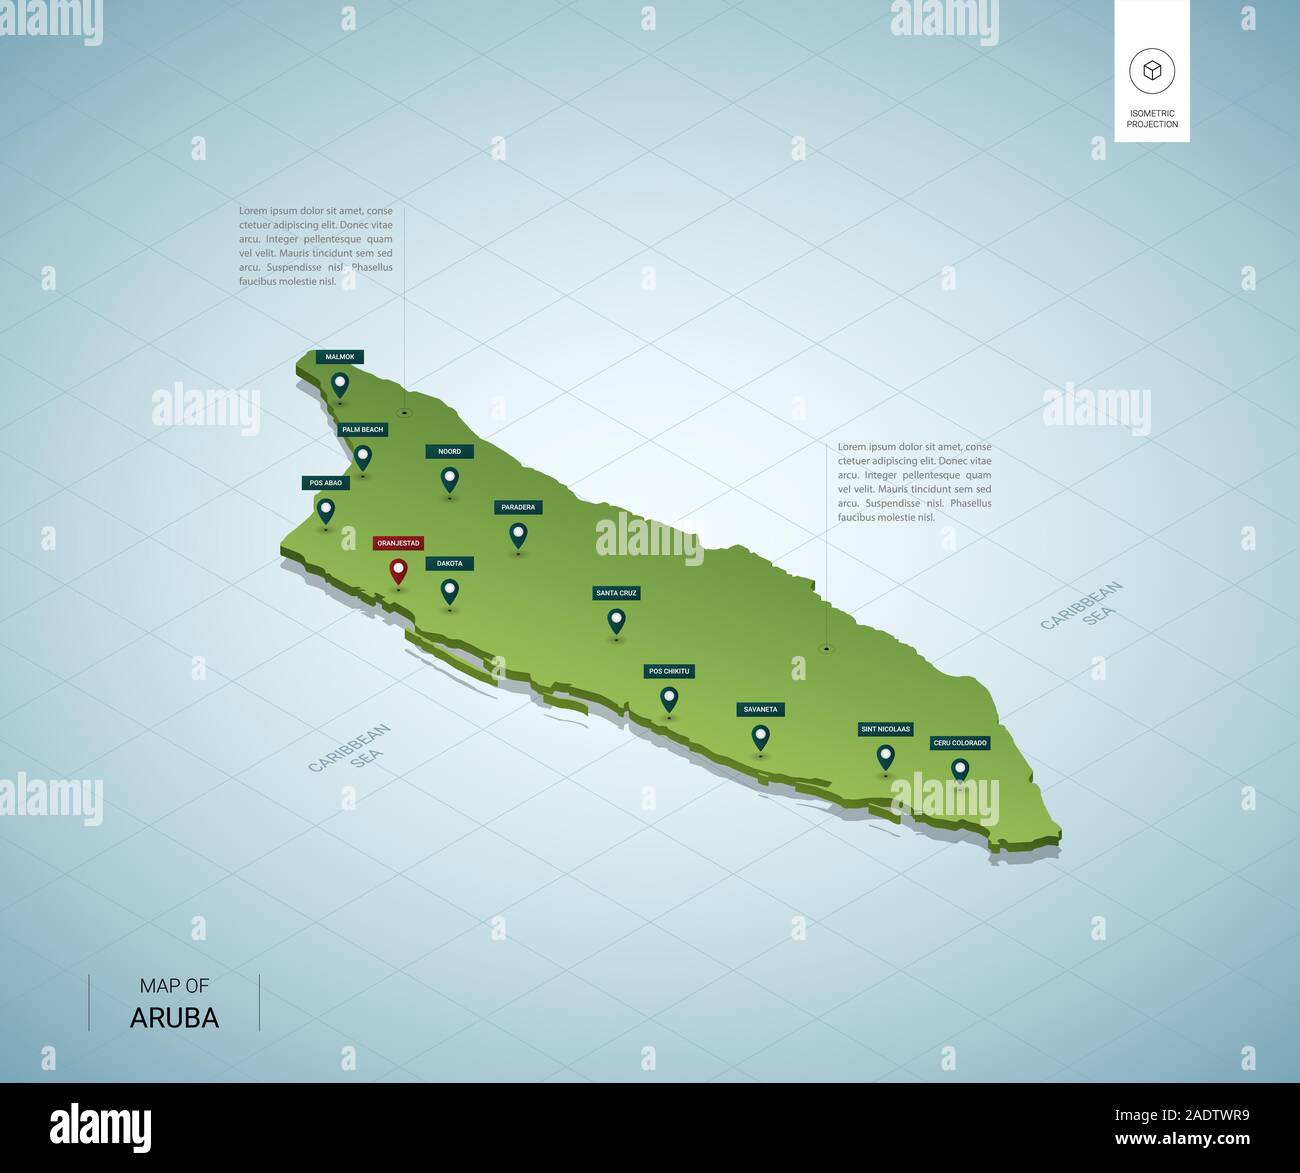 Carte stylisée d'Aruba. 3D isométrique carte verte avec les villes, frontières, régions, capitale Oranjestad. Vector illustration. Couches modifiables clairement étiquetés. Illustration de Vecteur